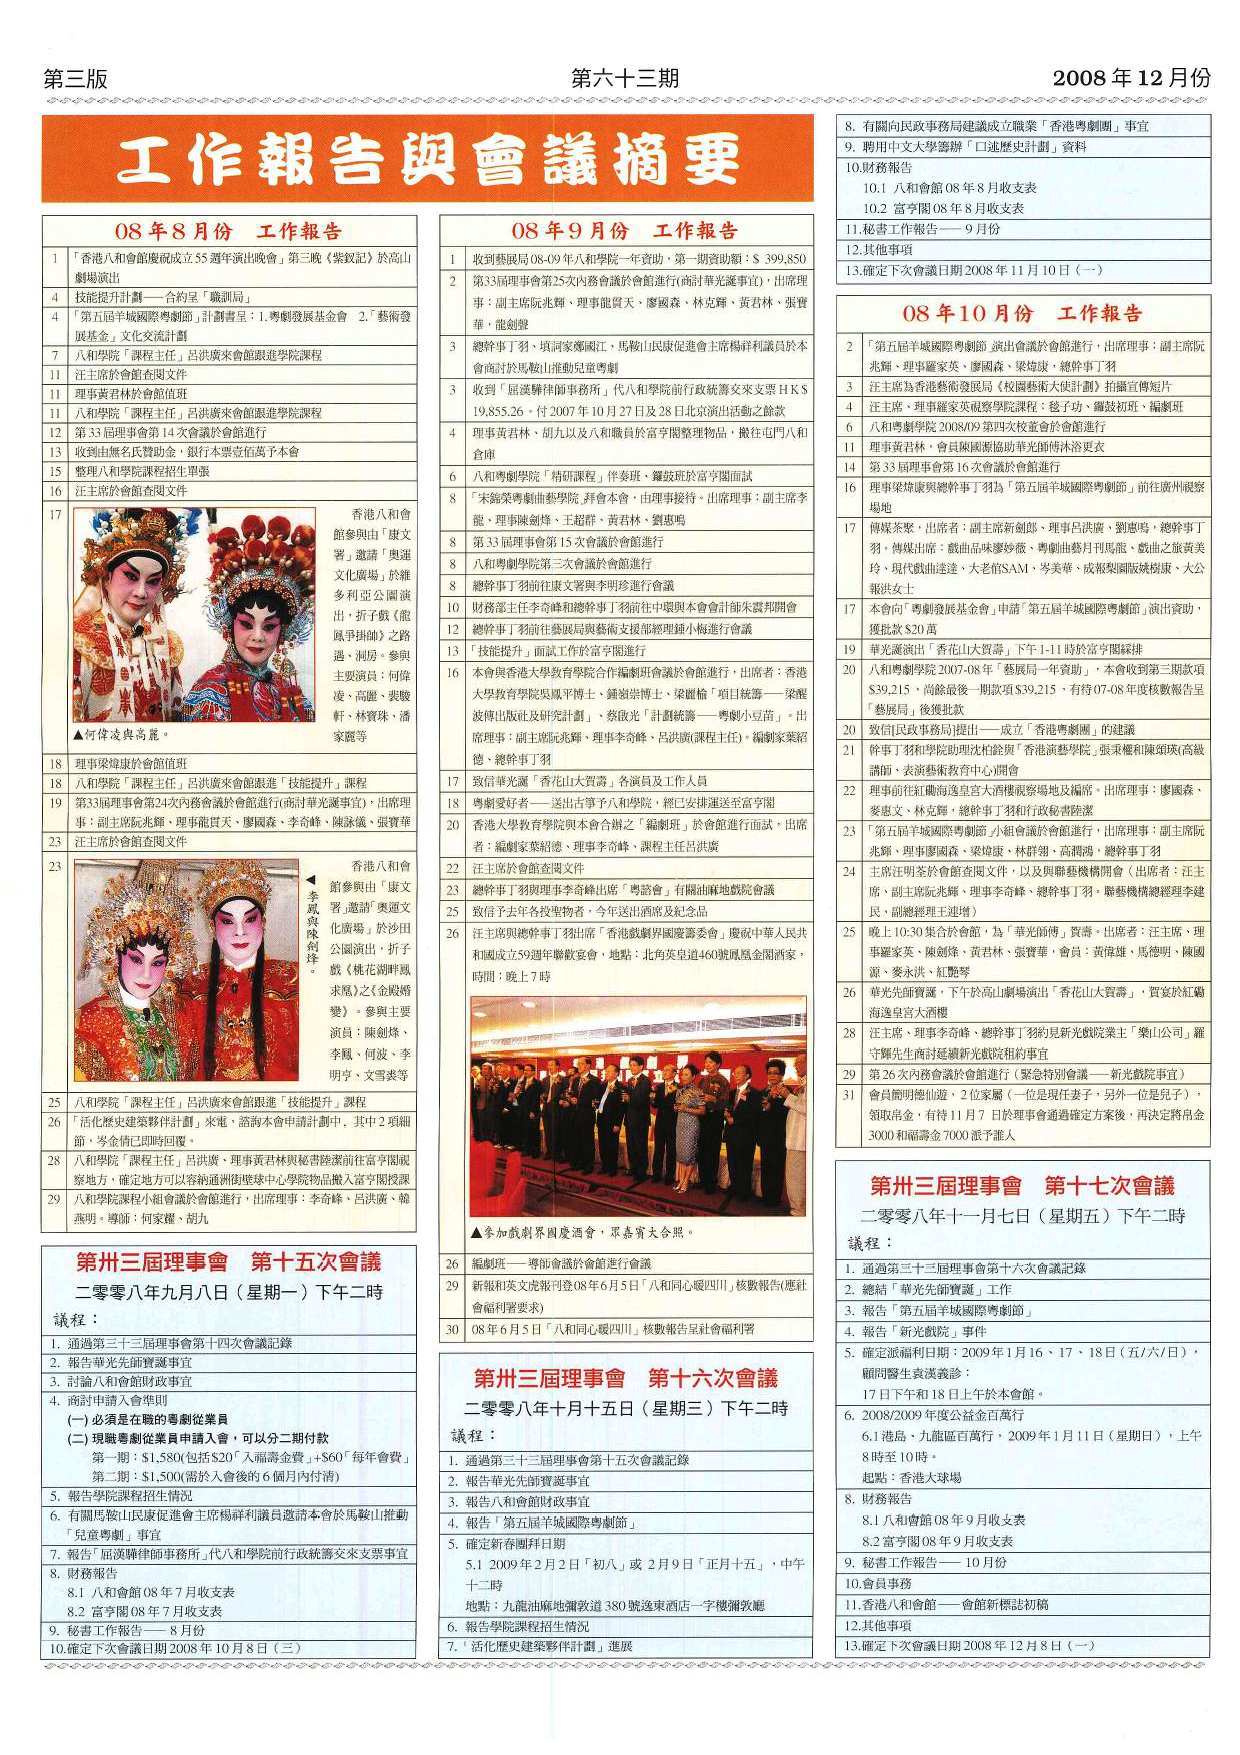 香港八和會館辦公室報告（2008年8月至10月）及第三十三屆理事會第十五至十七次會議議程